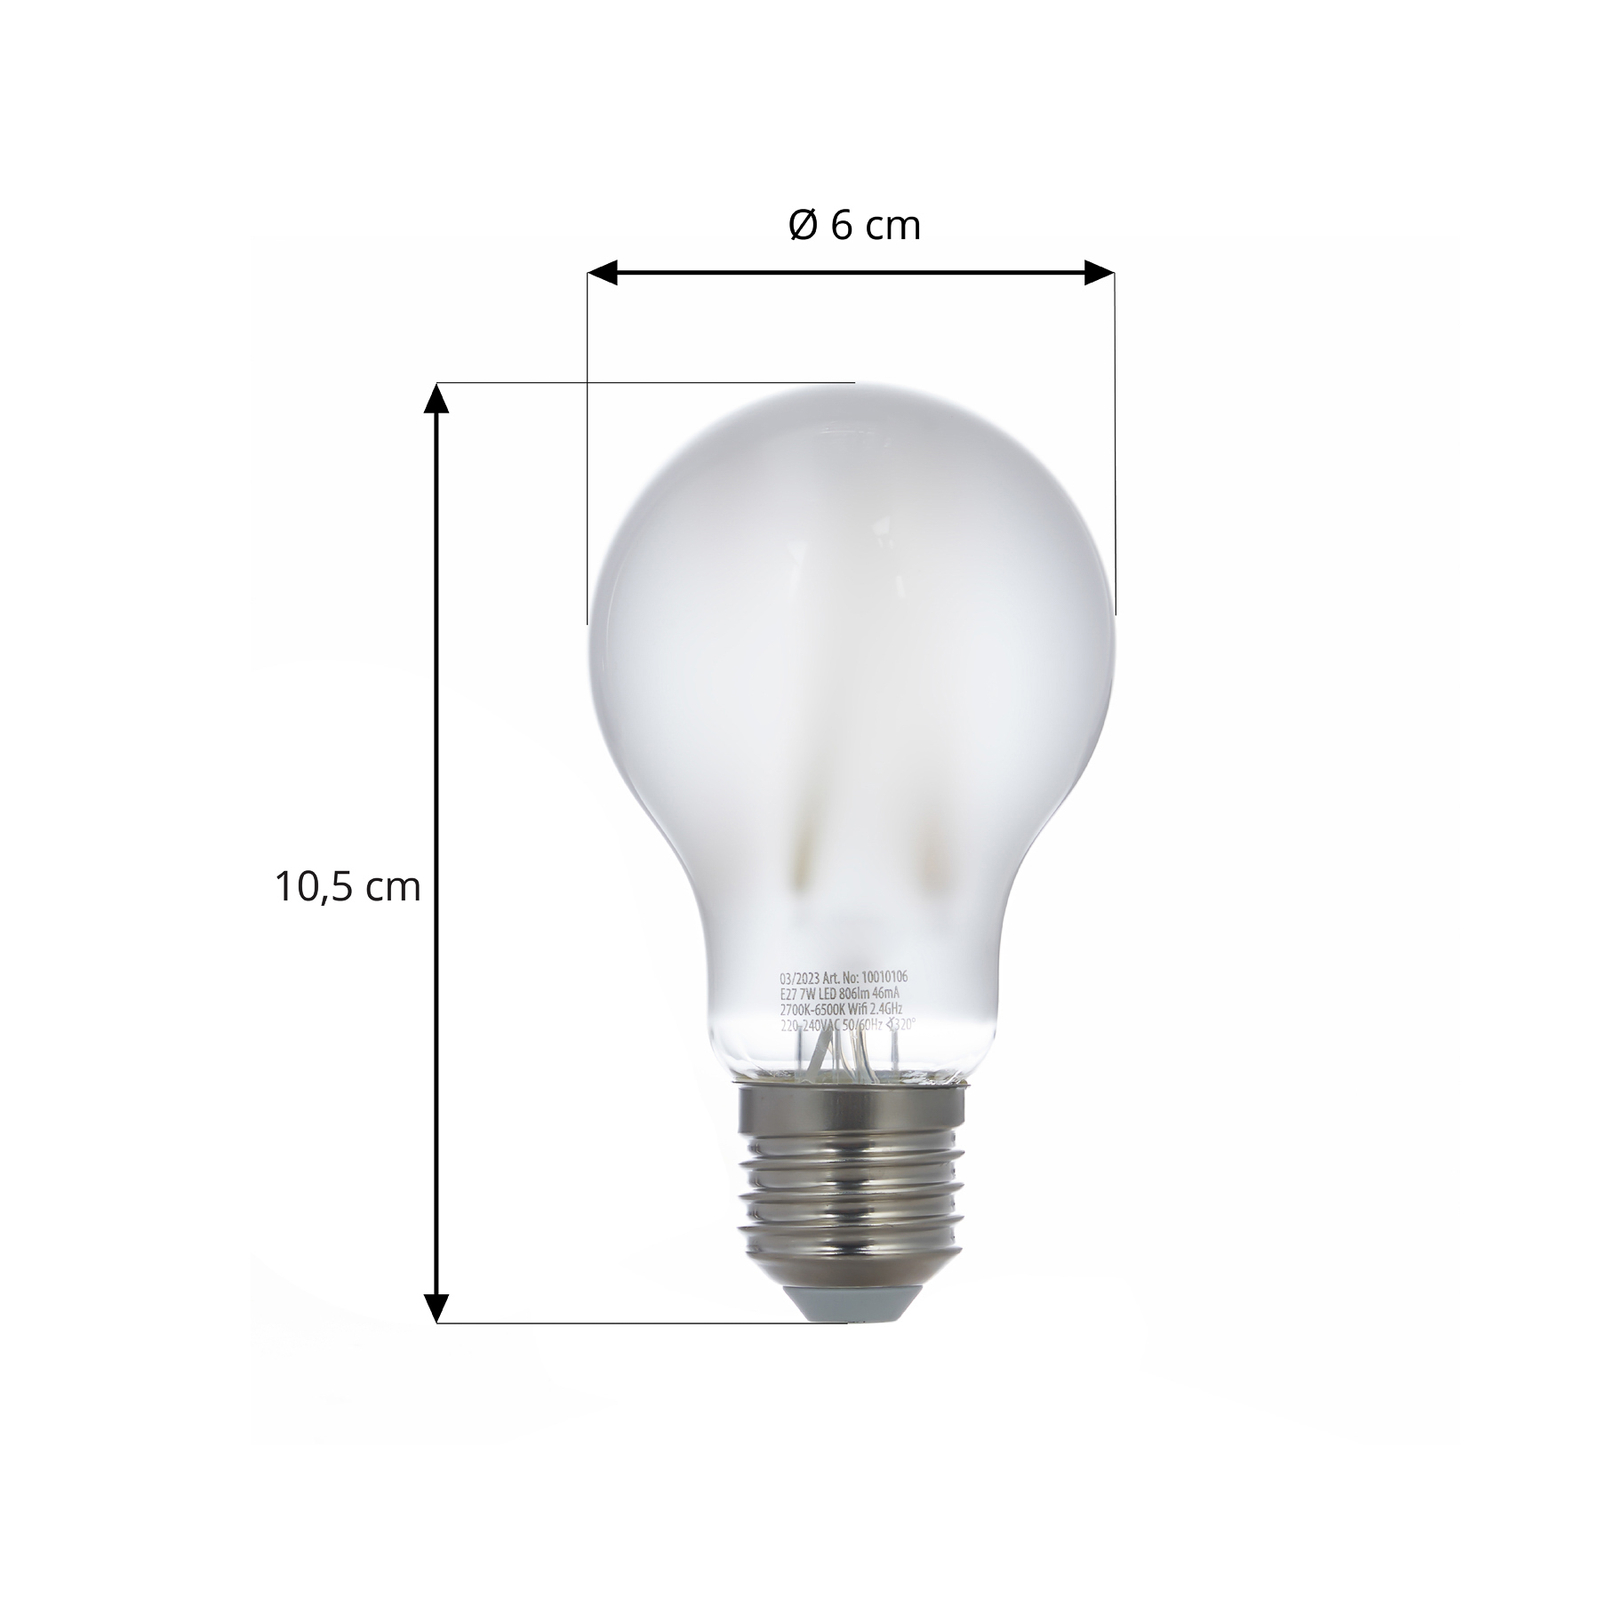 LUUMR Smart ampoule LED, 3 pièces, E27, A60, 7W, mat, Tuya